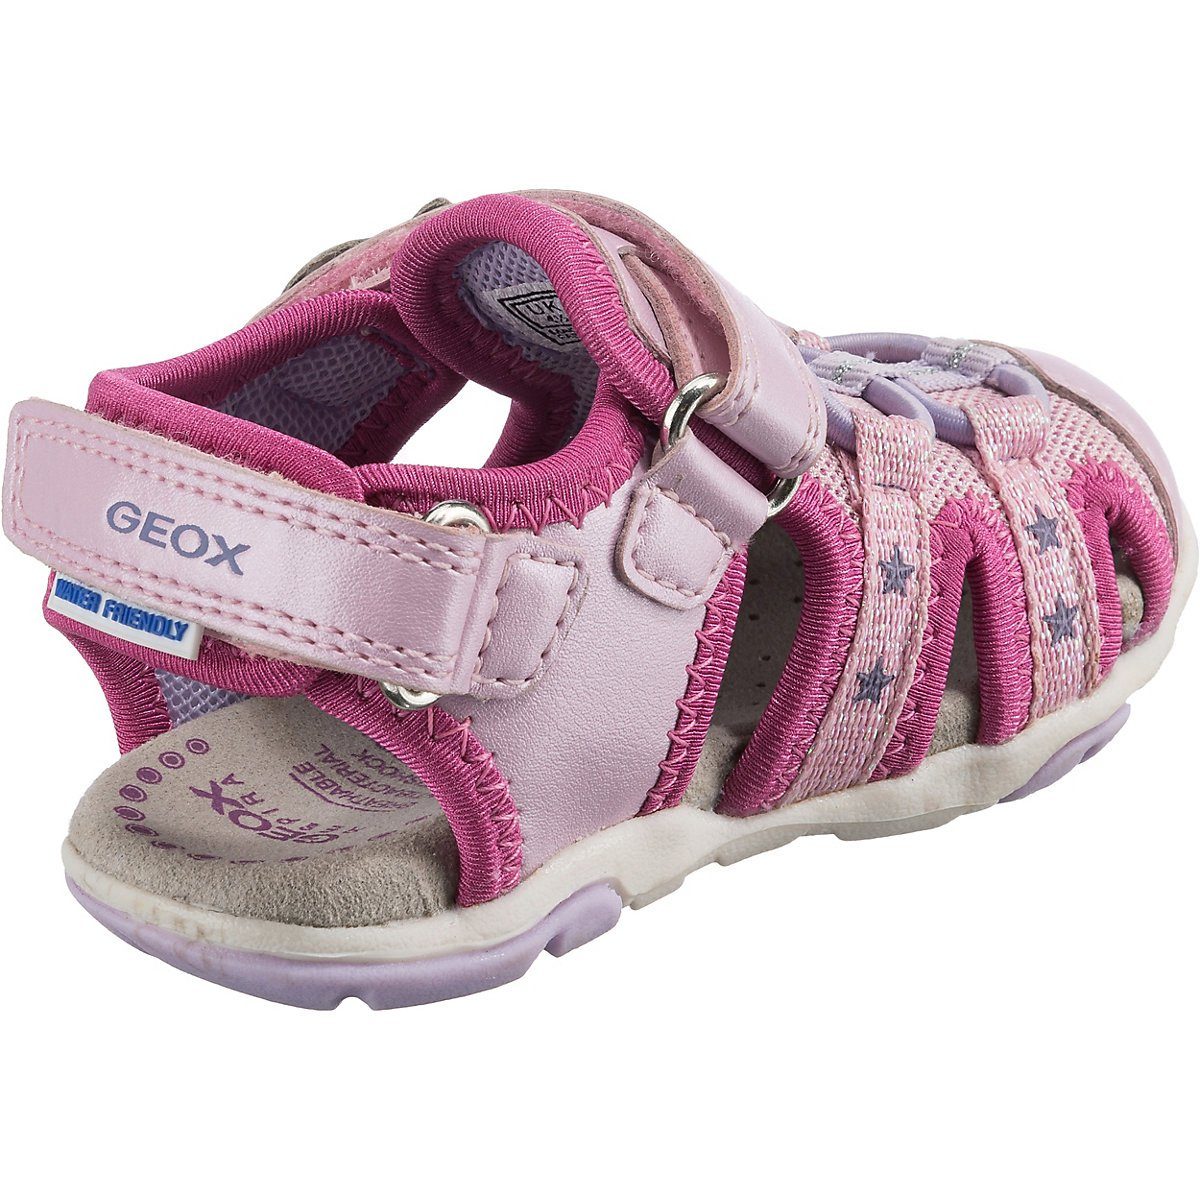 Schuhe Babyschuhe Mädchen Geox Baby Sandalen AGASIM für Mädchen Sandale